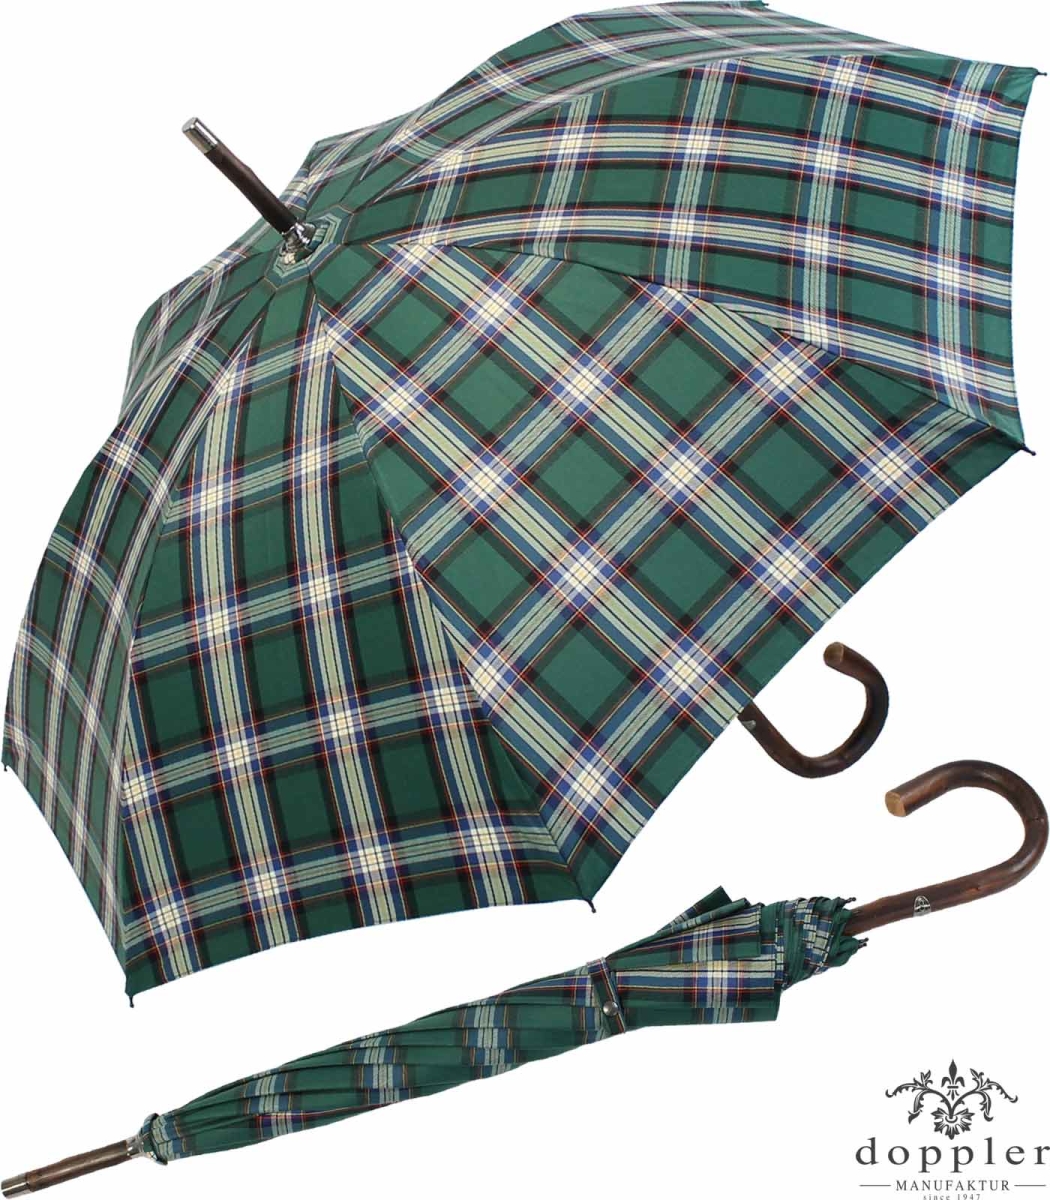 Doppler Manufaktur Regenschirm Kastanie Stützschirm - Karo grün weiss,  219,00 €